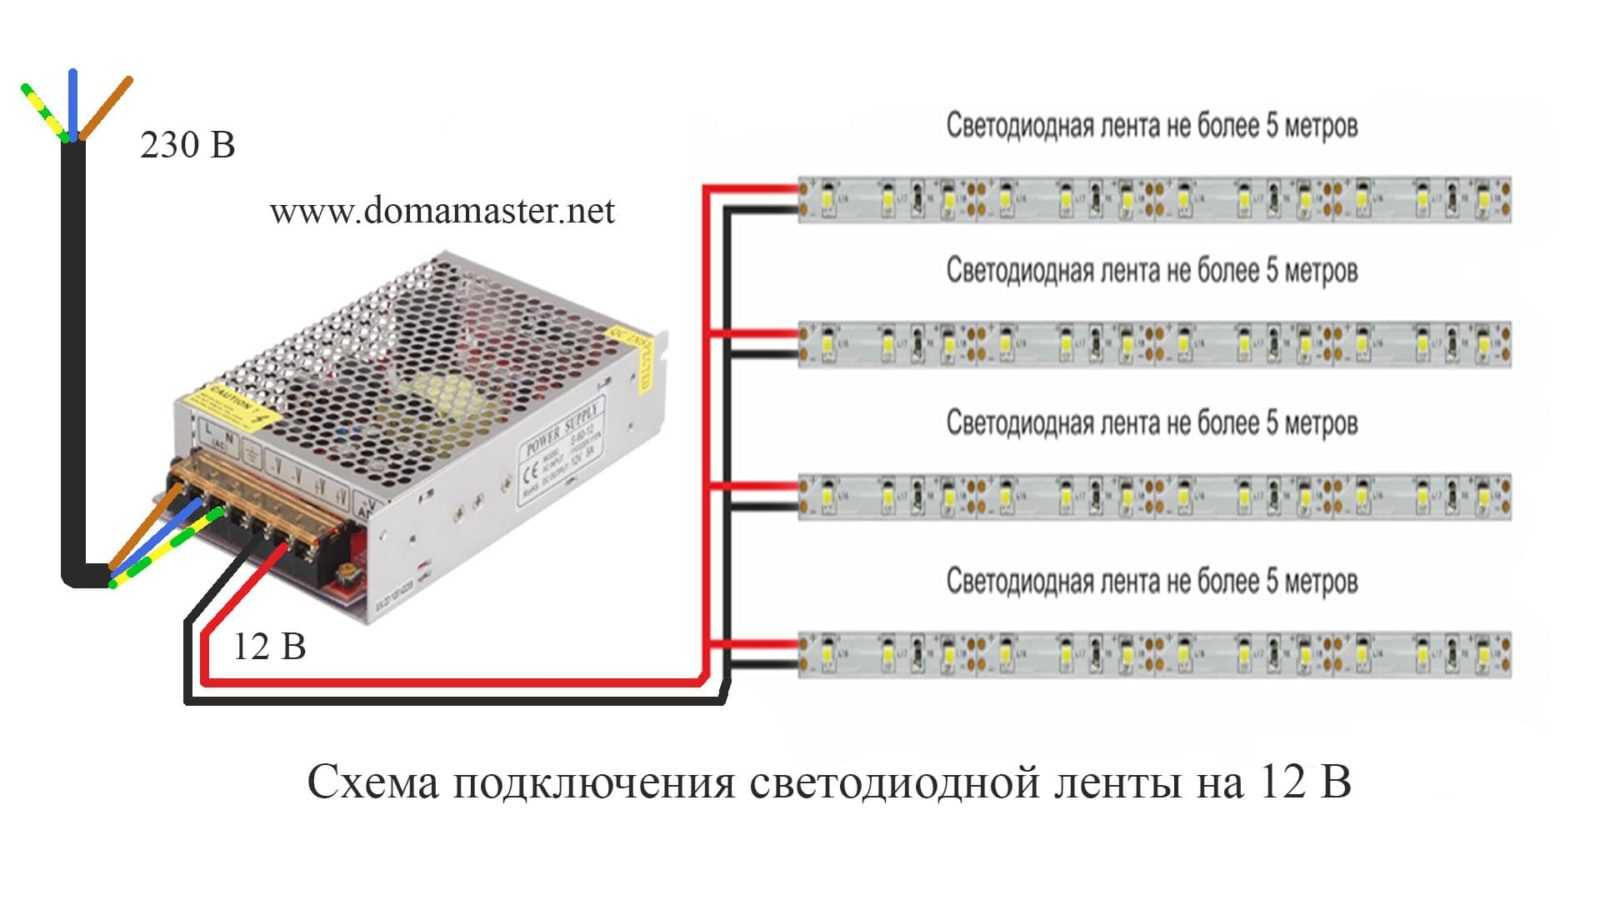 3 вида блока питания светодиодной ленты - какой выбрать и куда ставить. герметичные влагозащищенные блоки недостатки.